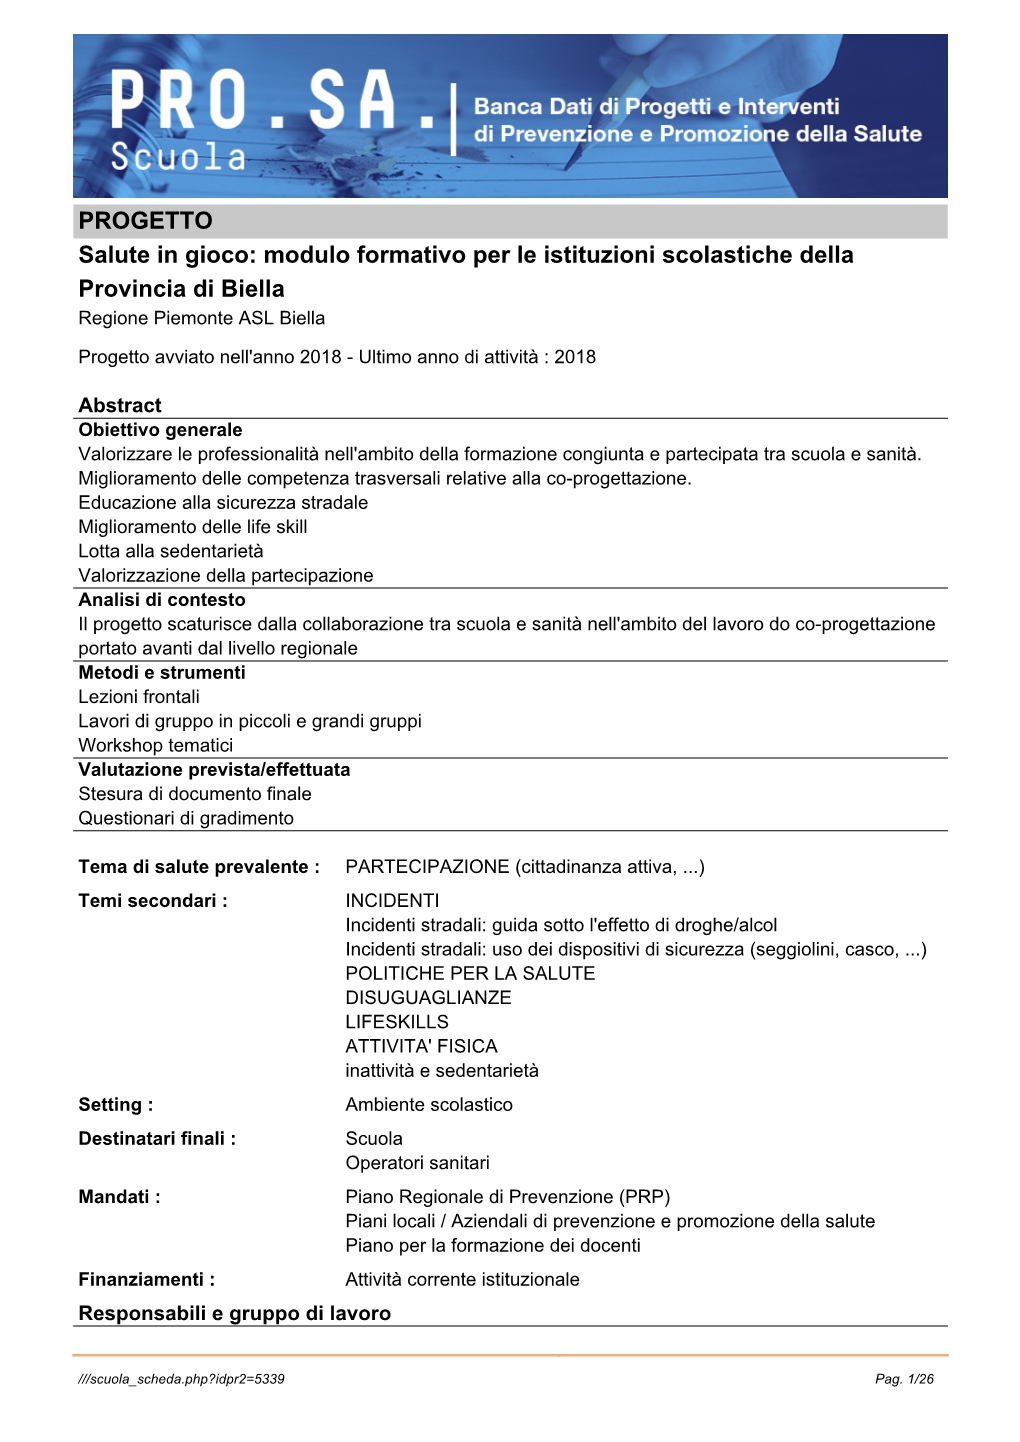 PROGETTO Salute in Gioco: Modulo Formativo Per Le Istituzioni Scolastiche Della Provincia Di Biella Regione Piemonte ASL Biella